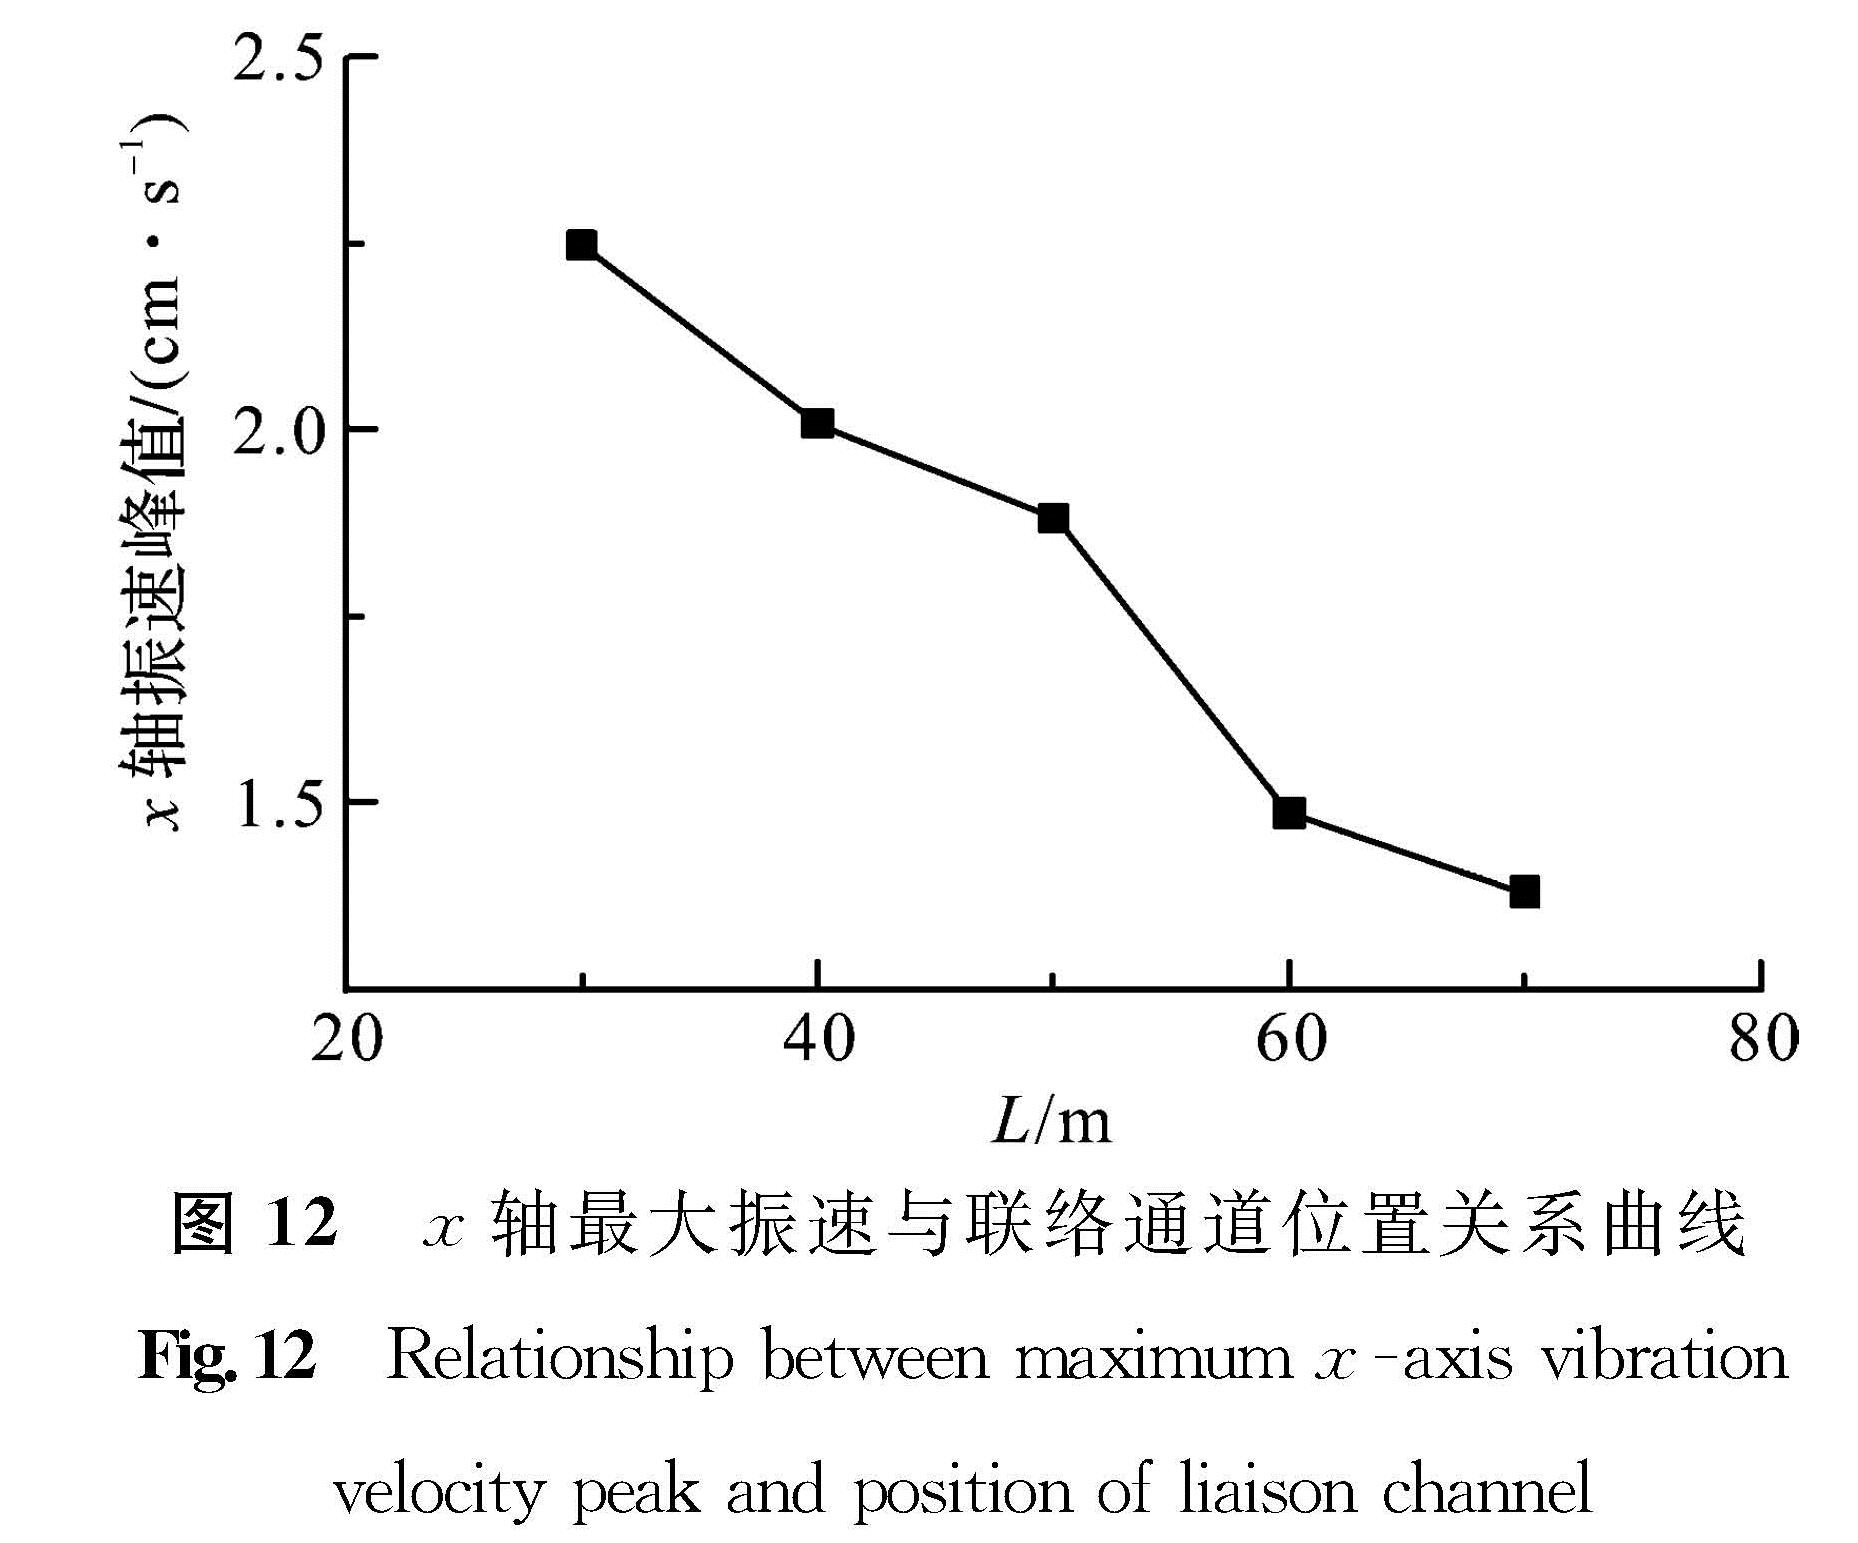 图 12 x轴最大振速与联络通道位置关系曲线<br/>Fig.12 Relationship between maximum x -axis vibration velocity peak and position of liaison channel